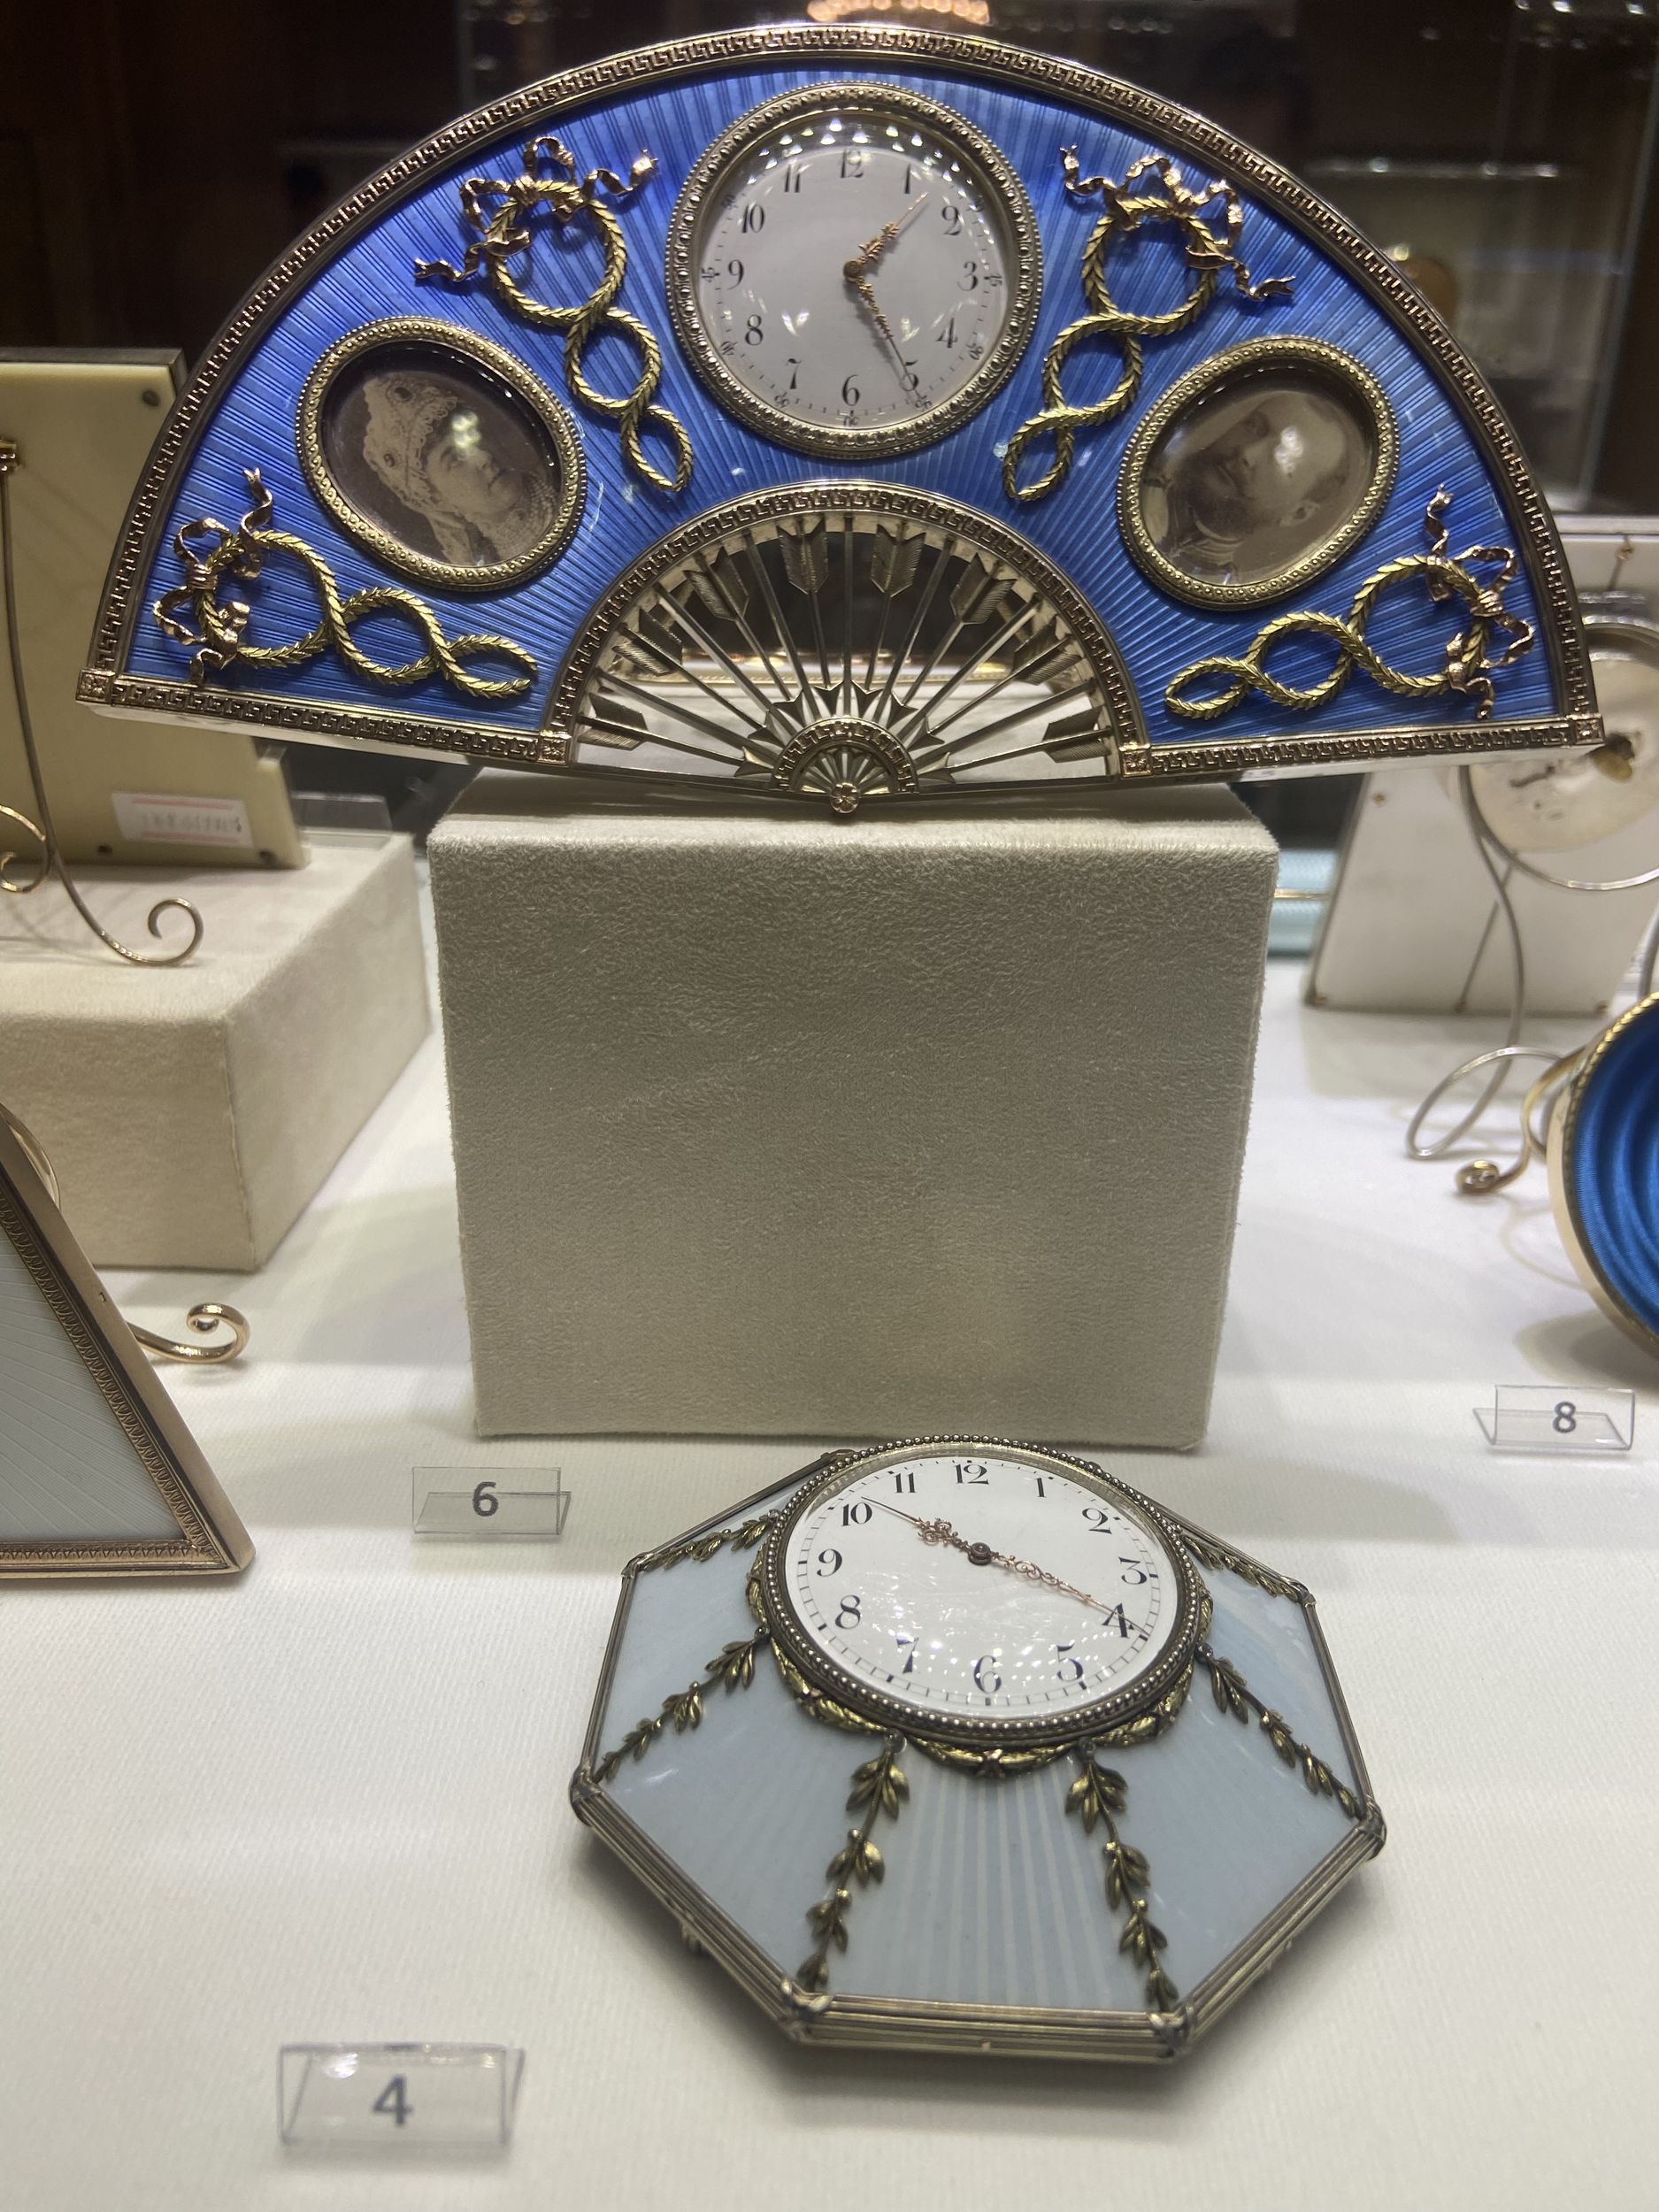 Веер-часы. Фото сделано автором поста во время посещения Музея Фаберже